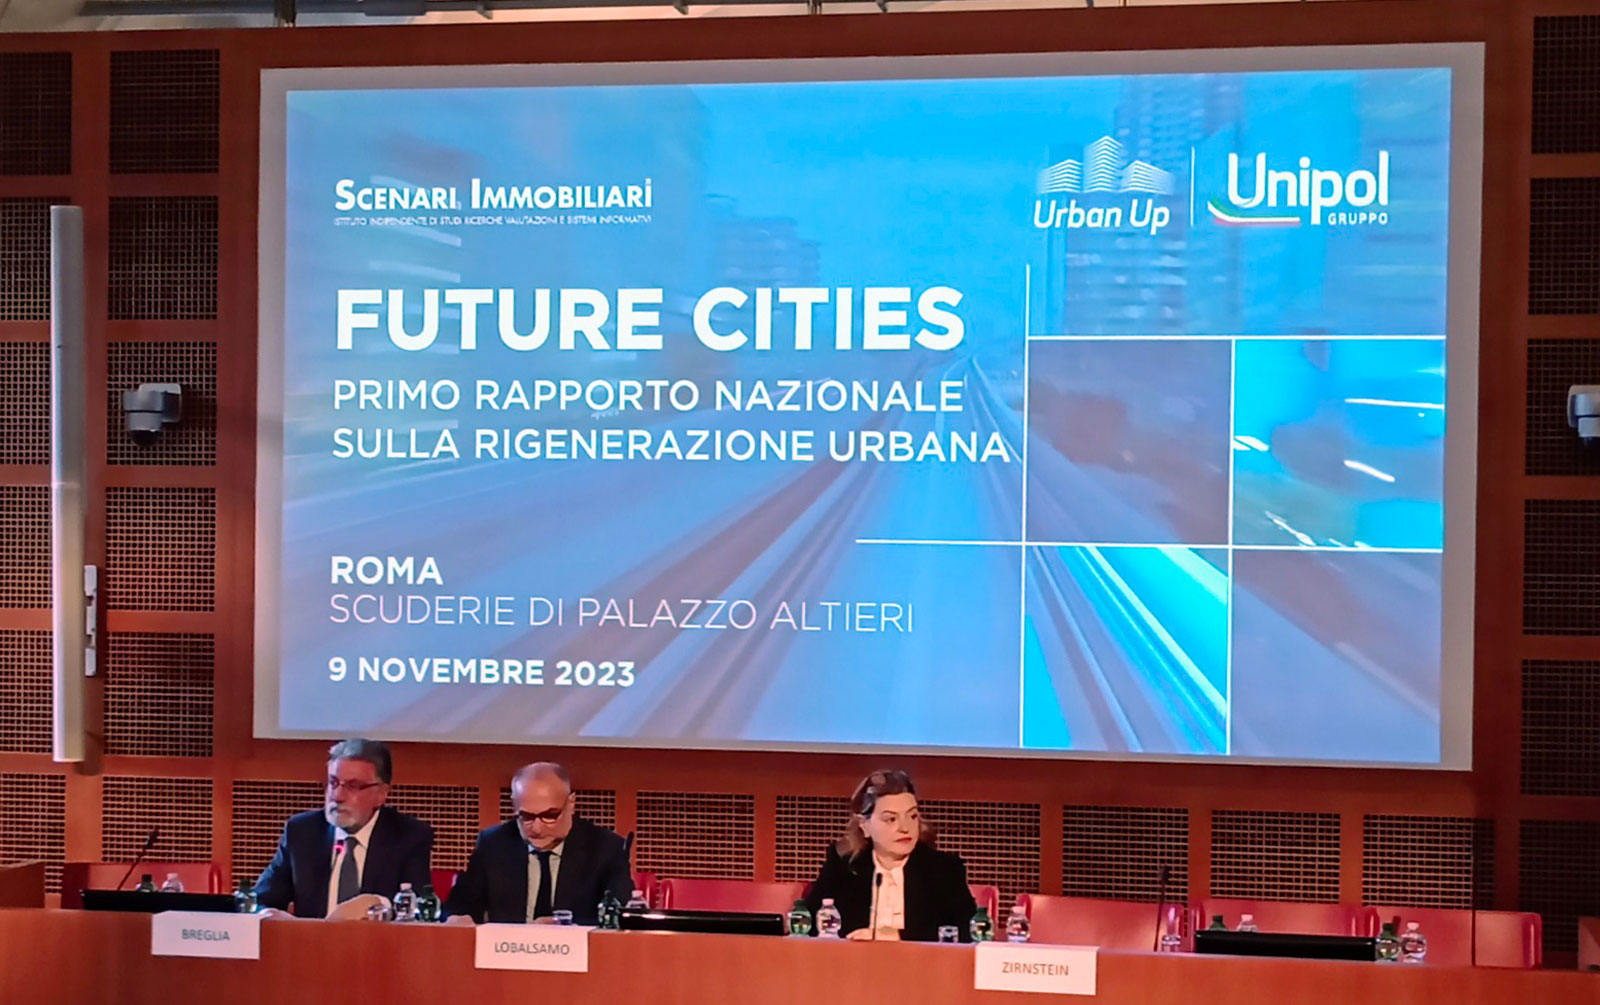 Future Cities - Scenari Immobiliari